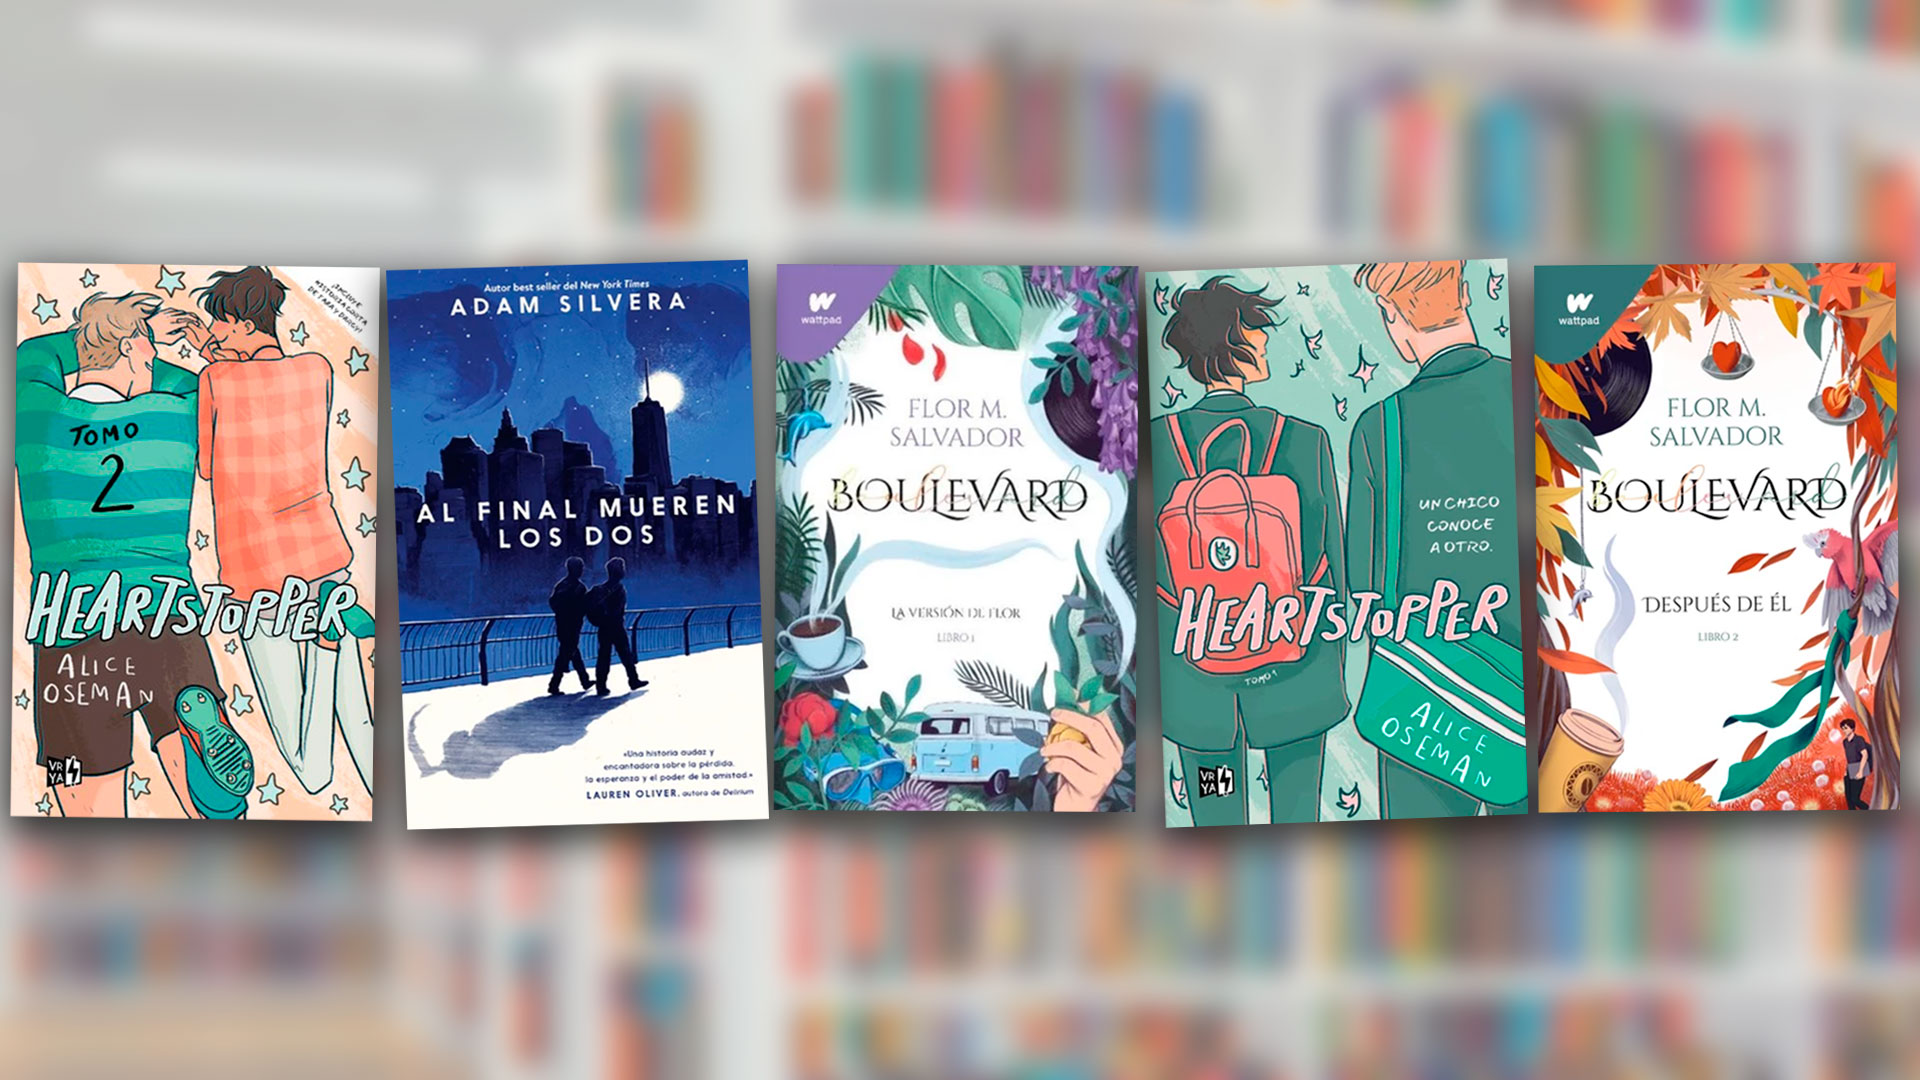 Libros juveniles para leer este fin de semana: “Heartstopper”, “Boulevard”  y “Al final mueren los dos” por menos de 45.000 pesos colombianos - Infobae